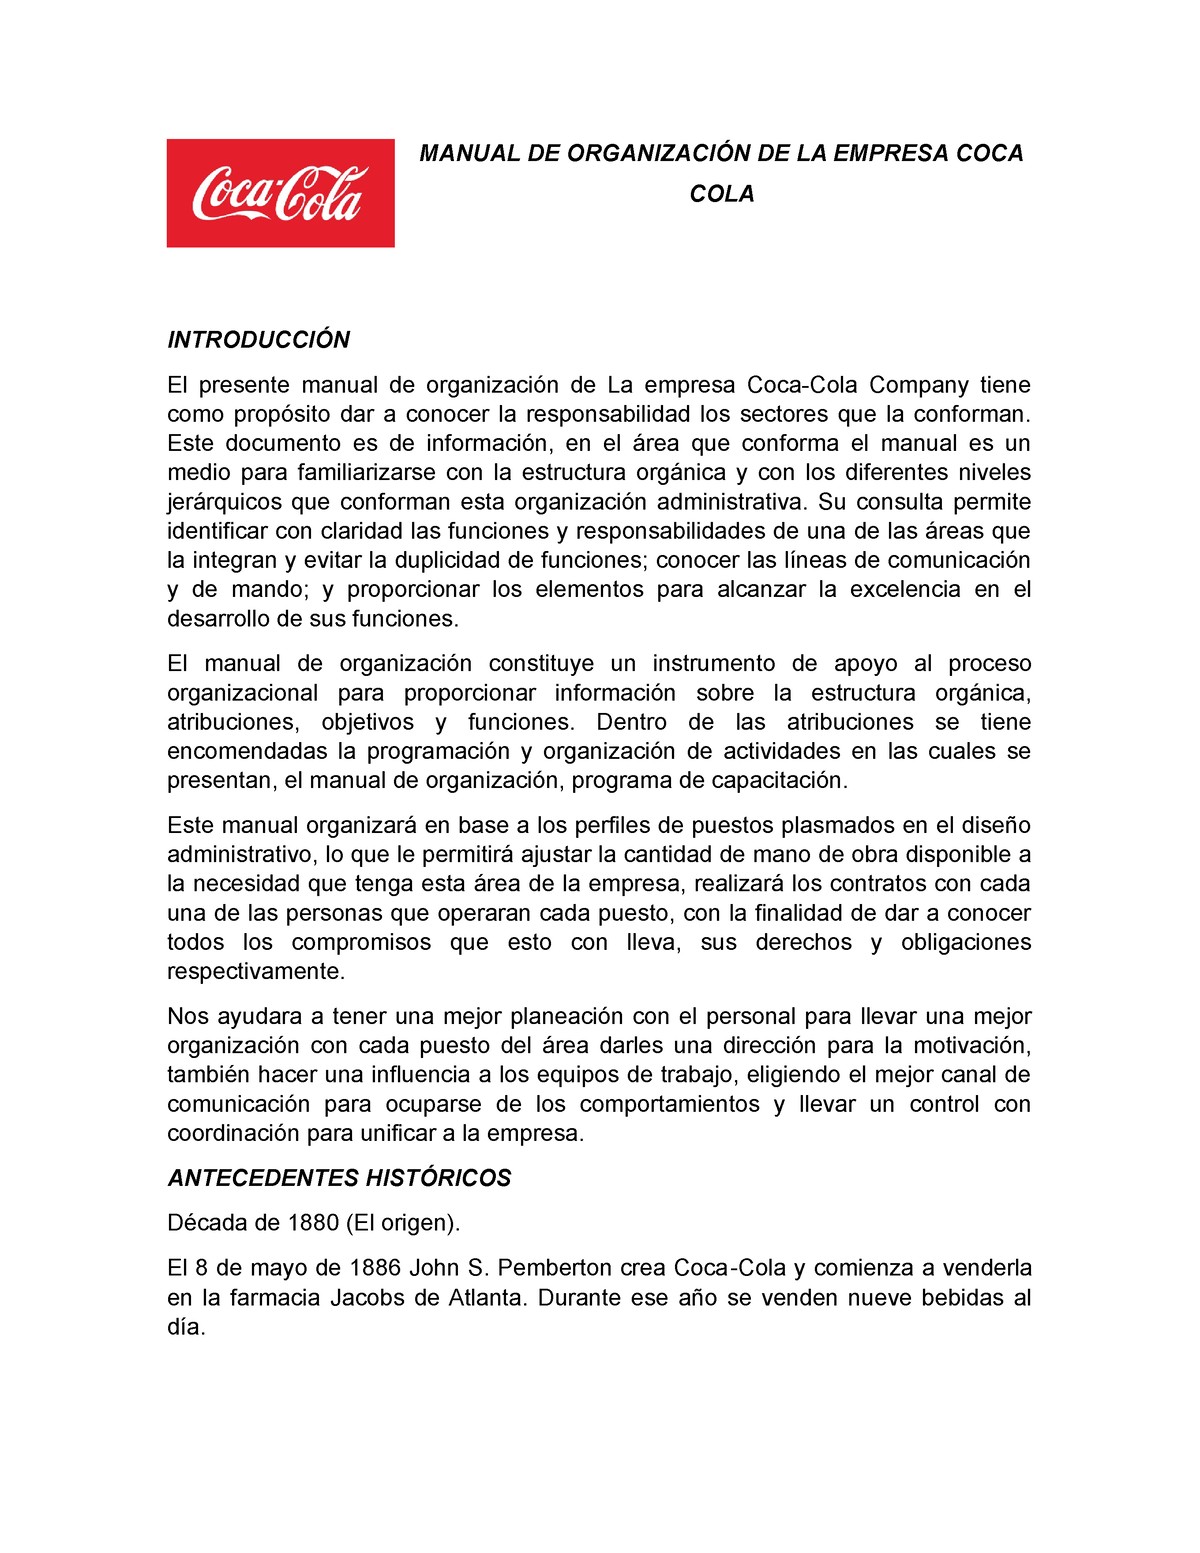 Manual DE Organización DE LA Empresa COCA COLA - MANUAL DE ORGANIZACIÓN DE  LA EMPRESA COCA COLA - Studocu